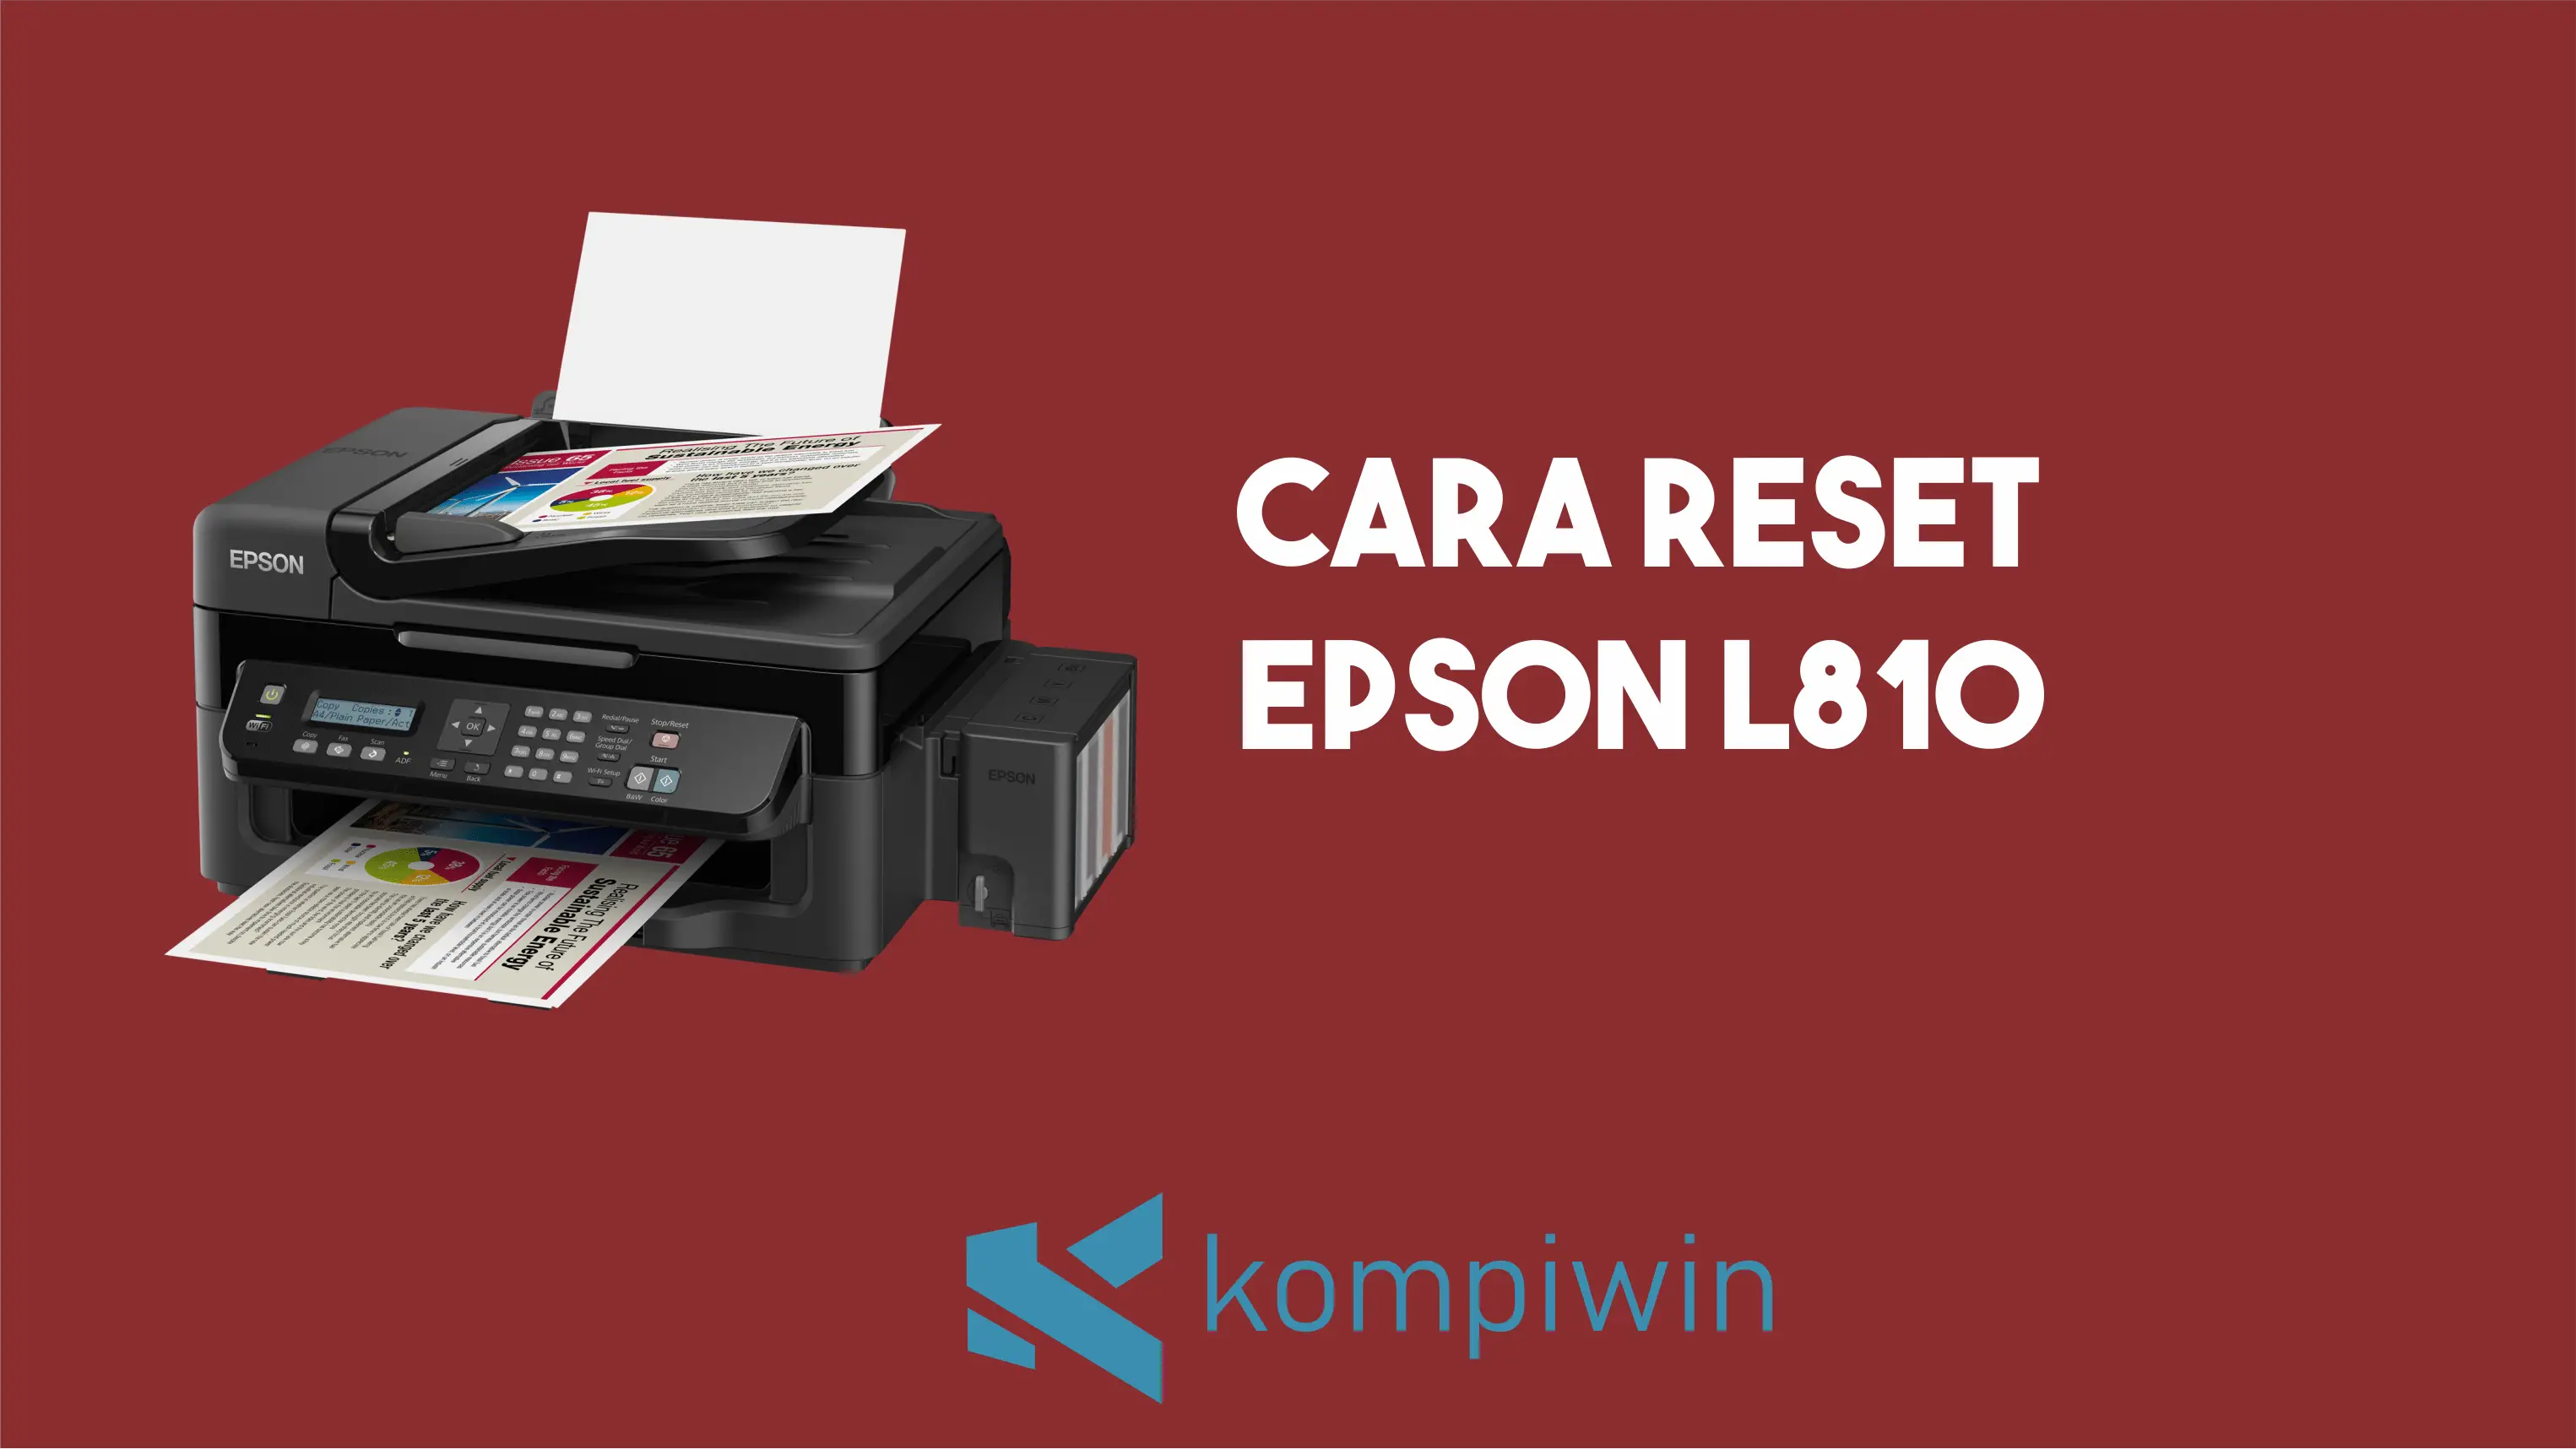 Cara Reset Epson L810